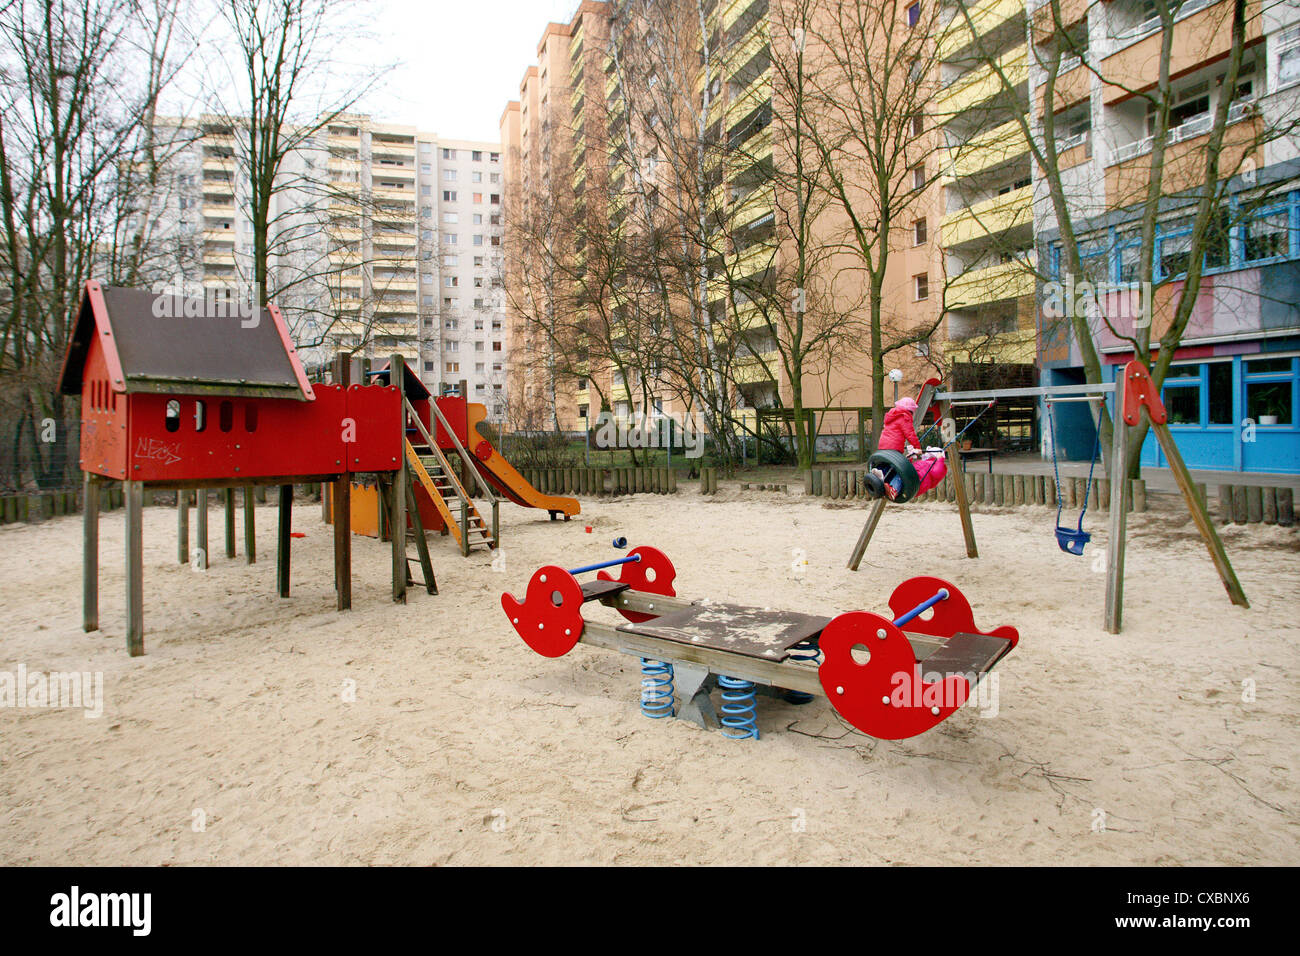 Berlin, a children's playground in a high-rise estate Kindertagesstaette Stock Photo